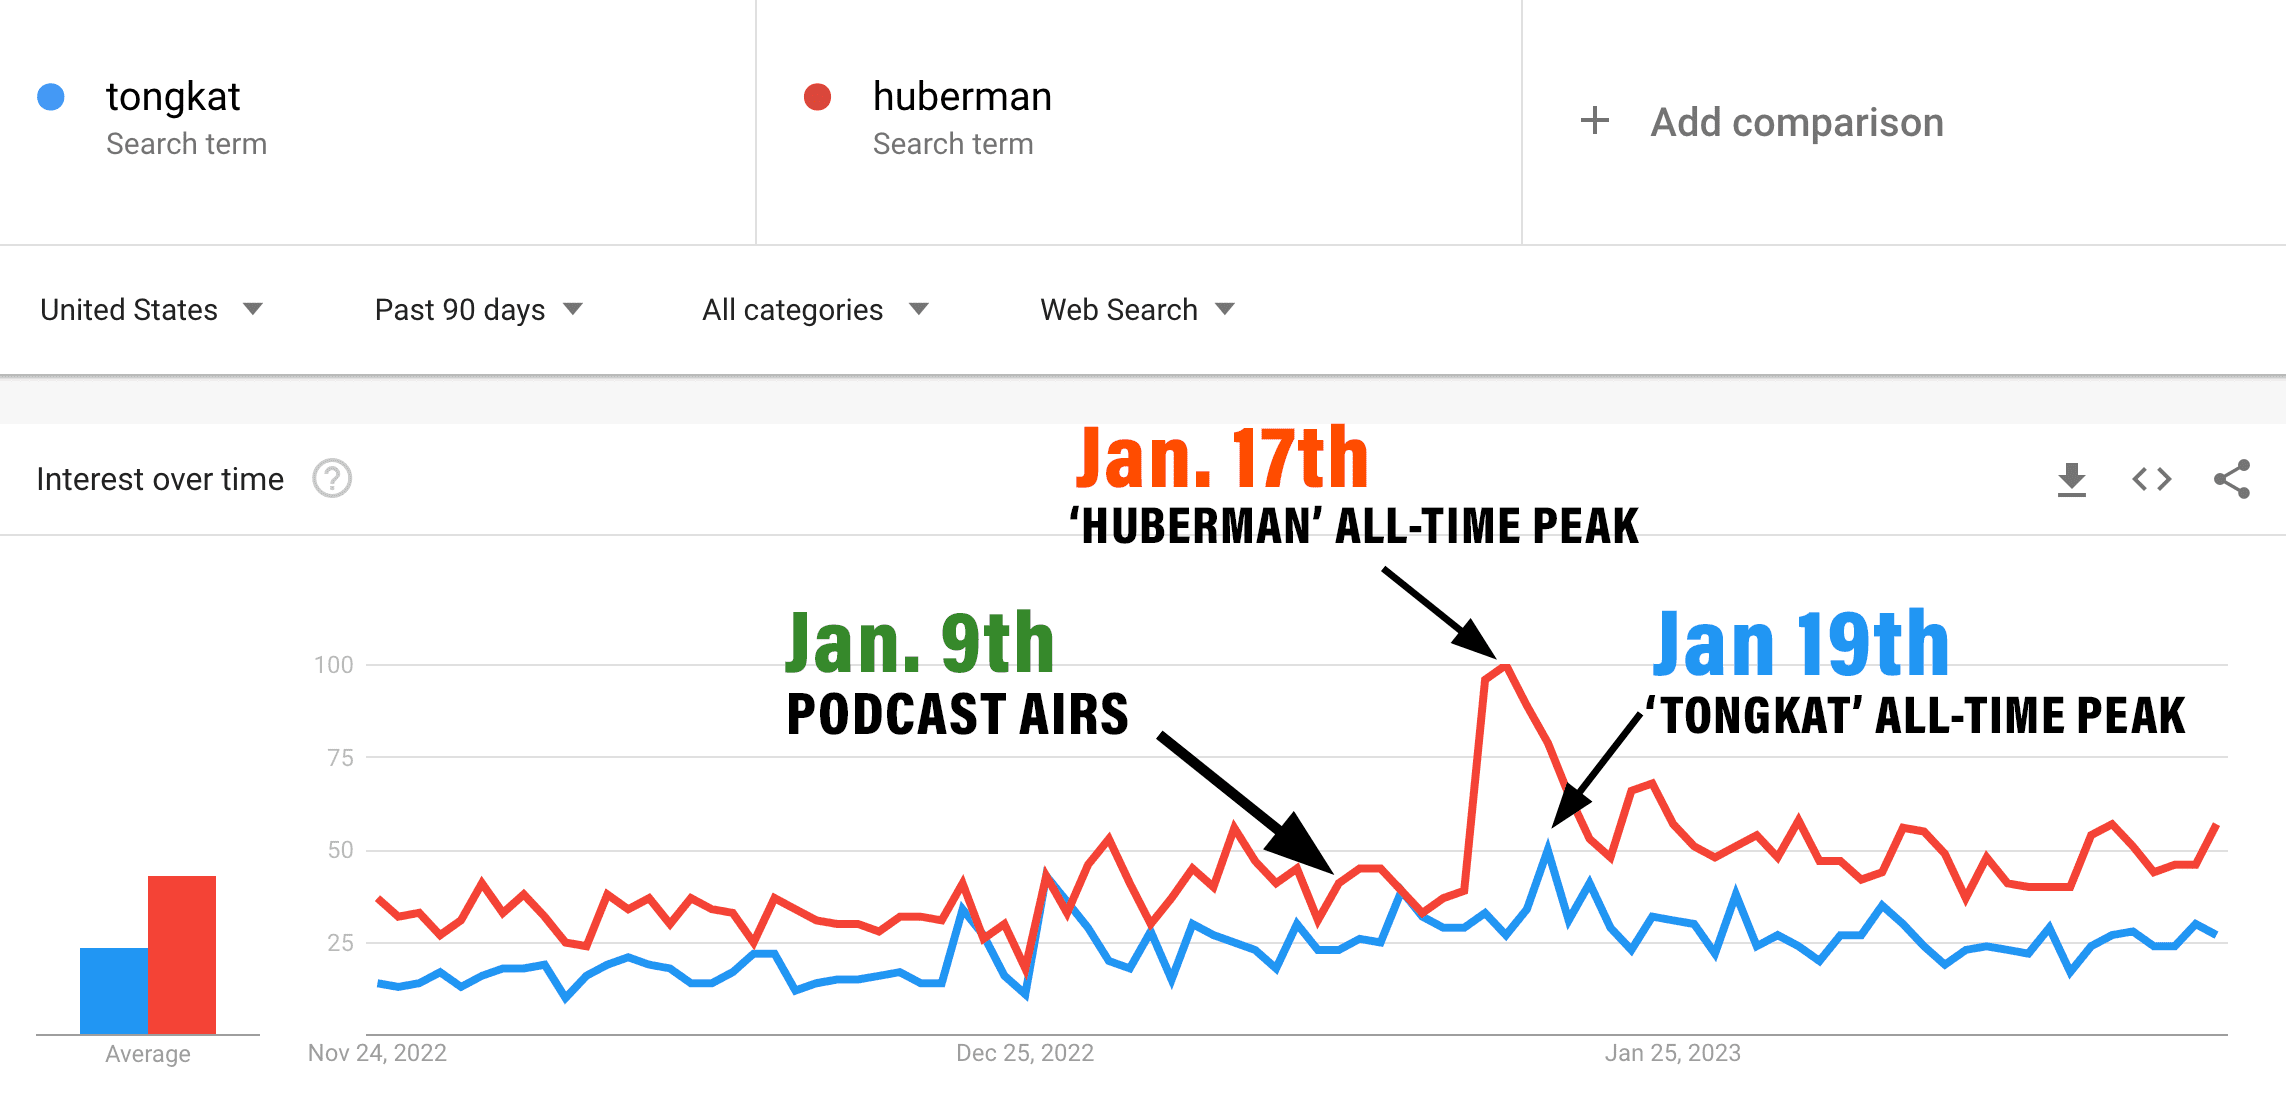 huberman and tongkat google trends data